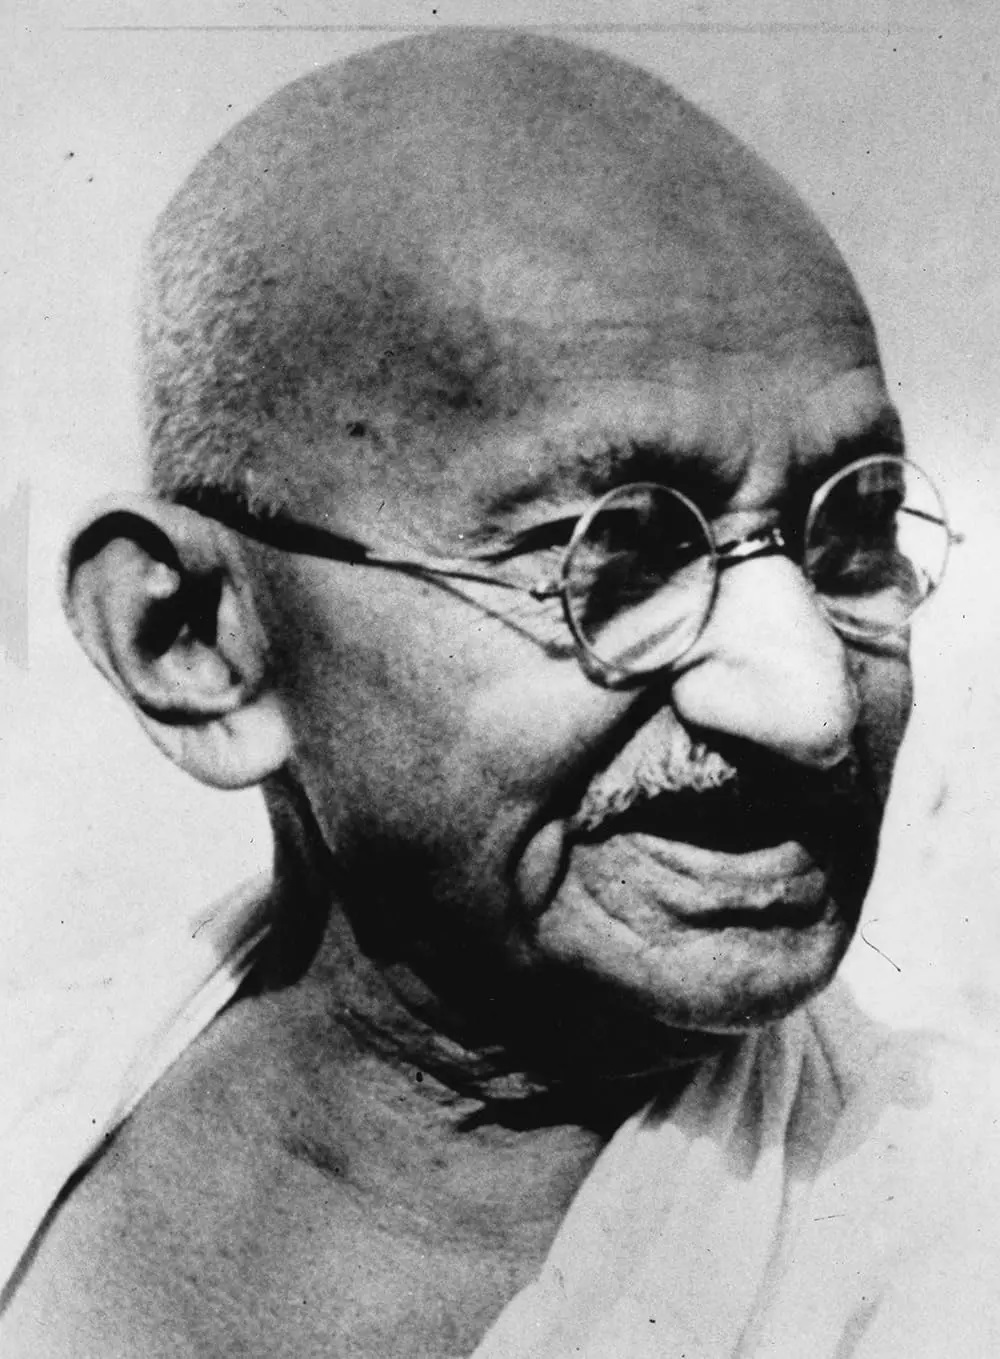 महात्मा: गांधी का जीवन, 1869-1948 (1968)
एक श्वेत-श्याम वृत्तचित्र, जो मुख्य रूप से गांधीजी के अपने शब्दों का उपयोग करते हुए, सत्य की खोज का वर्णन करता है. यह देखना सचमुच एक आश्चर्य है.